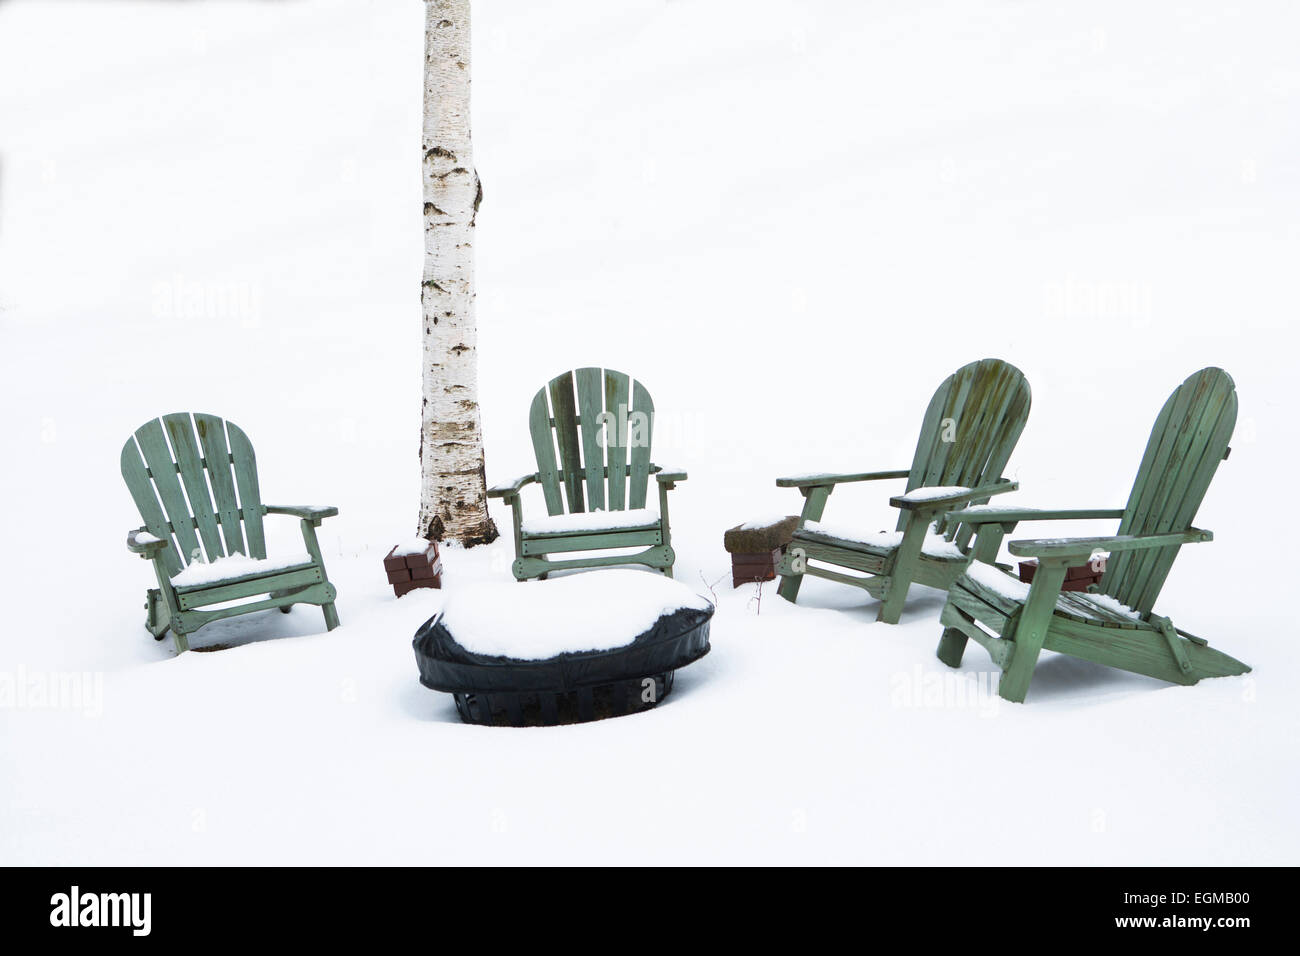 Una buca per il fuoco e sedie Adirondack nella neve nei pressi di betulla Foto Stock